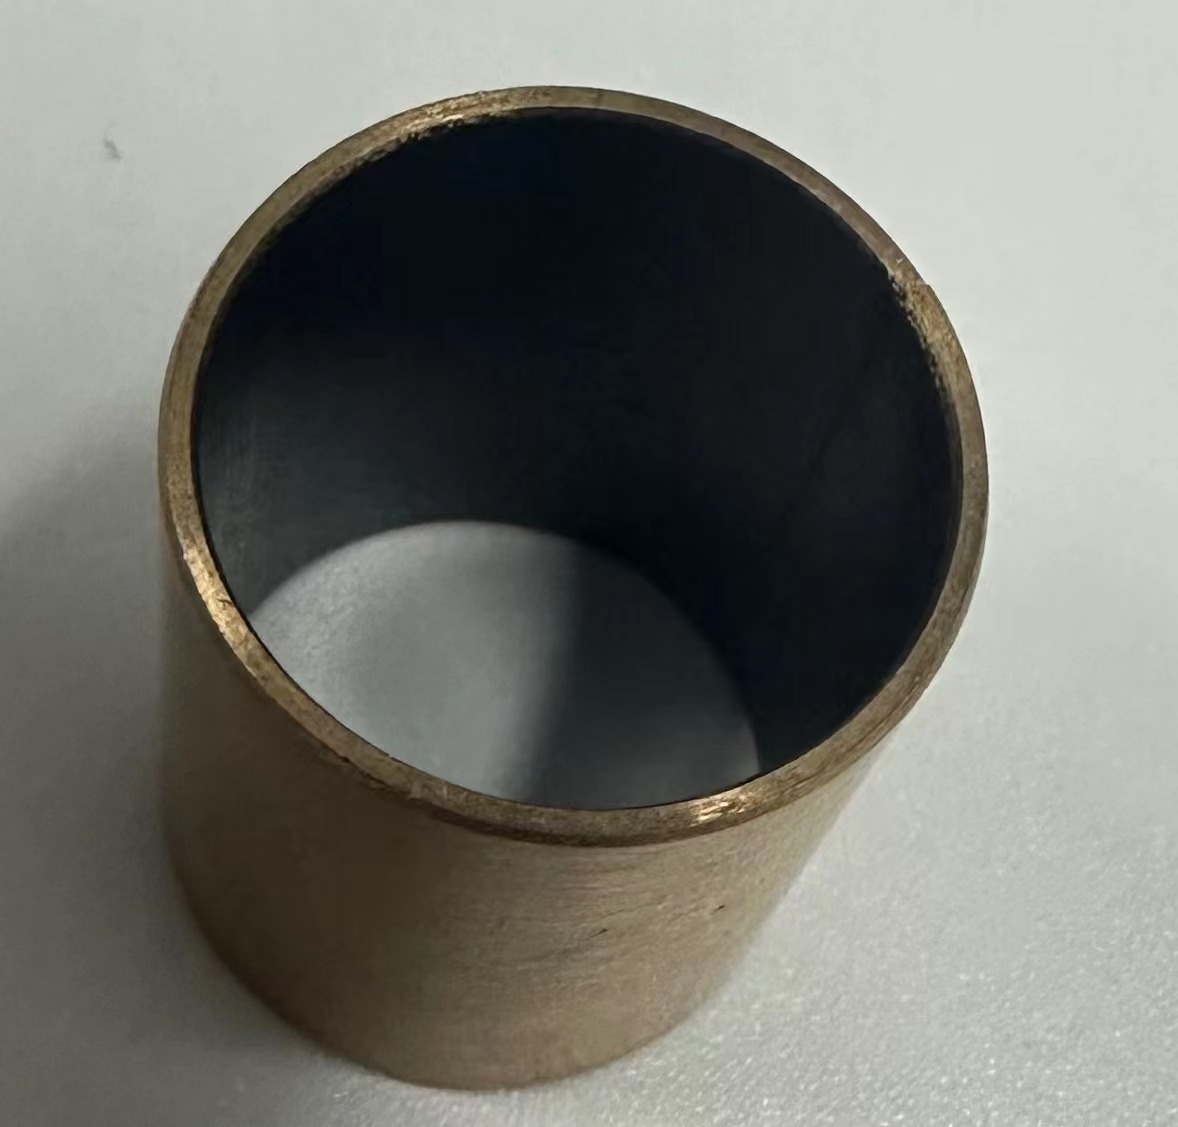 解决J20铜螺母二硫化钼涂层漏铜、涂层易脱落问题